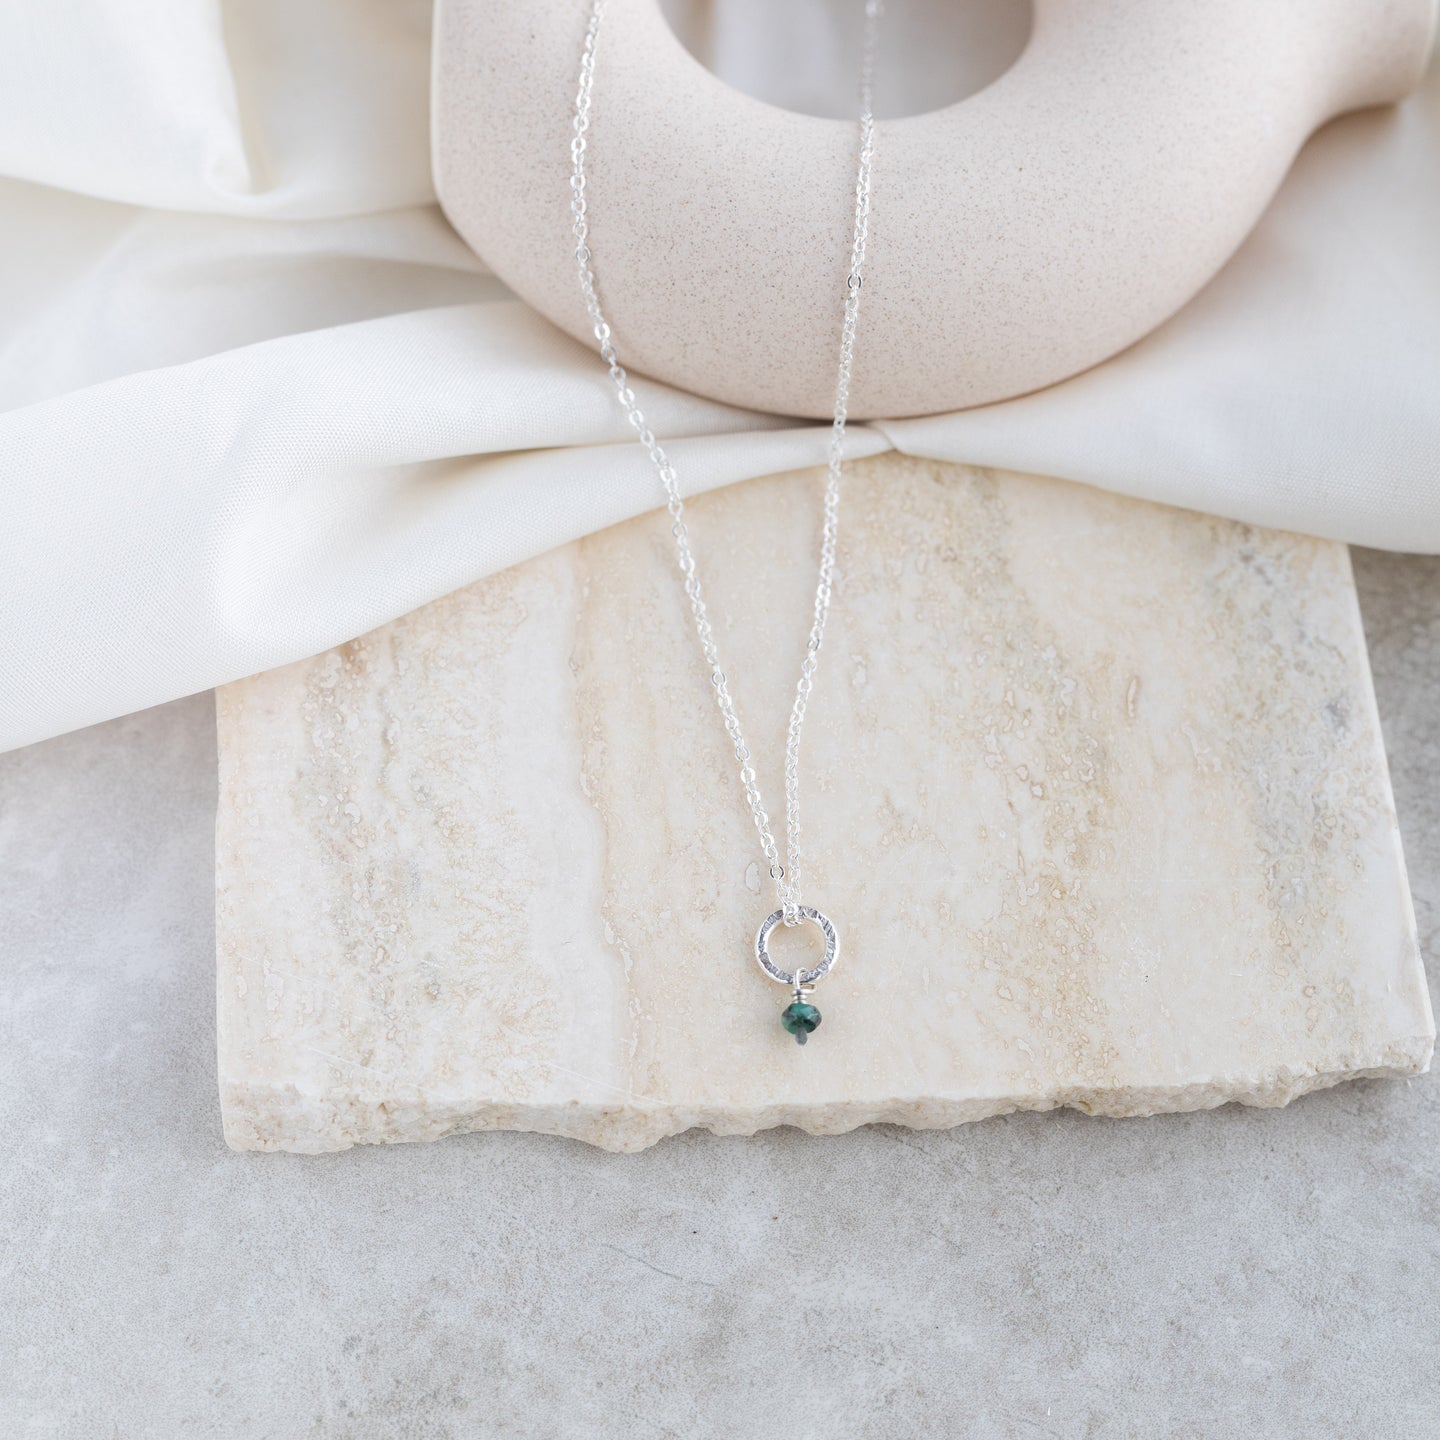 Petite Emerald Necklace